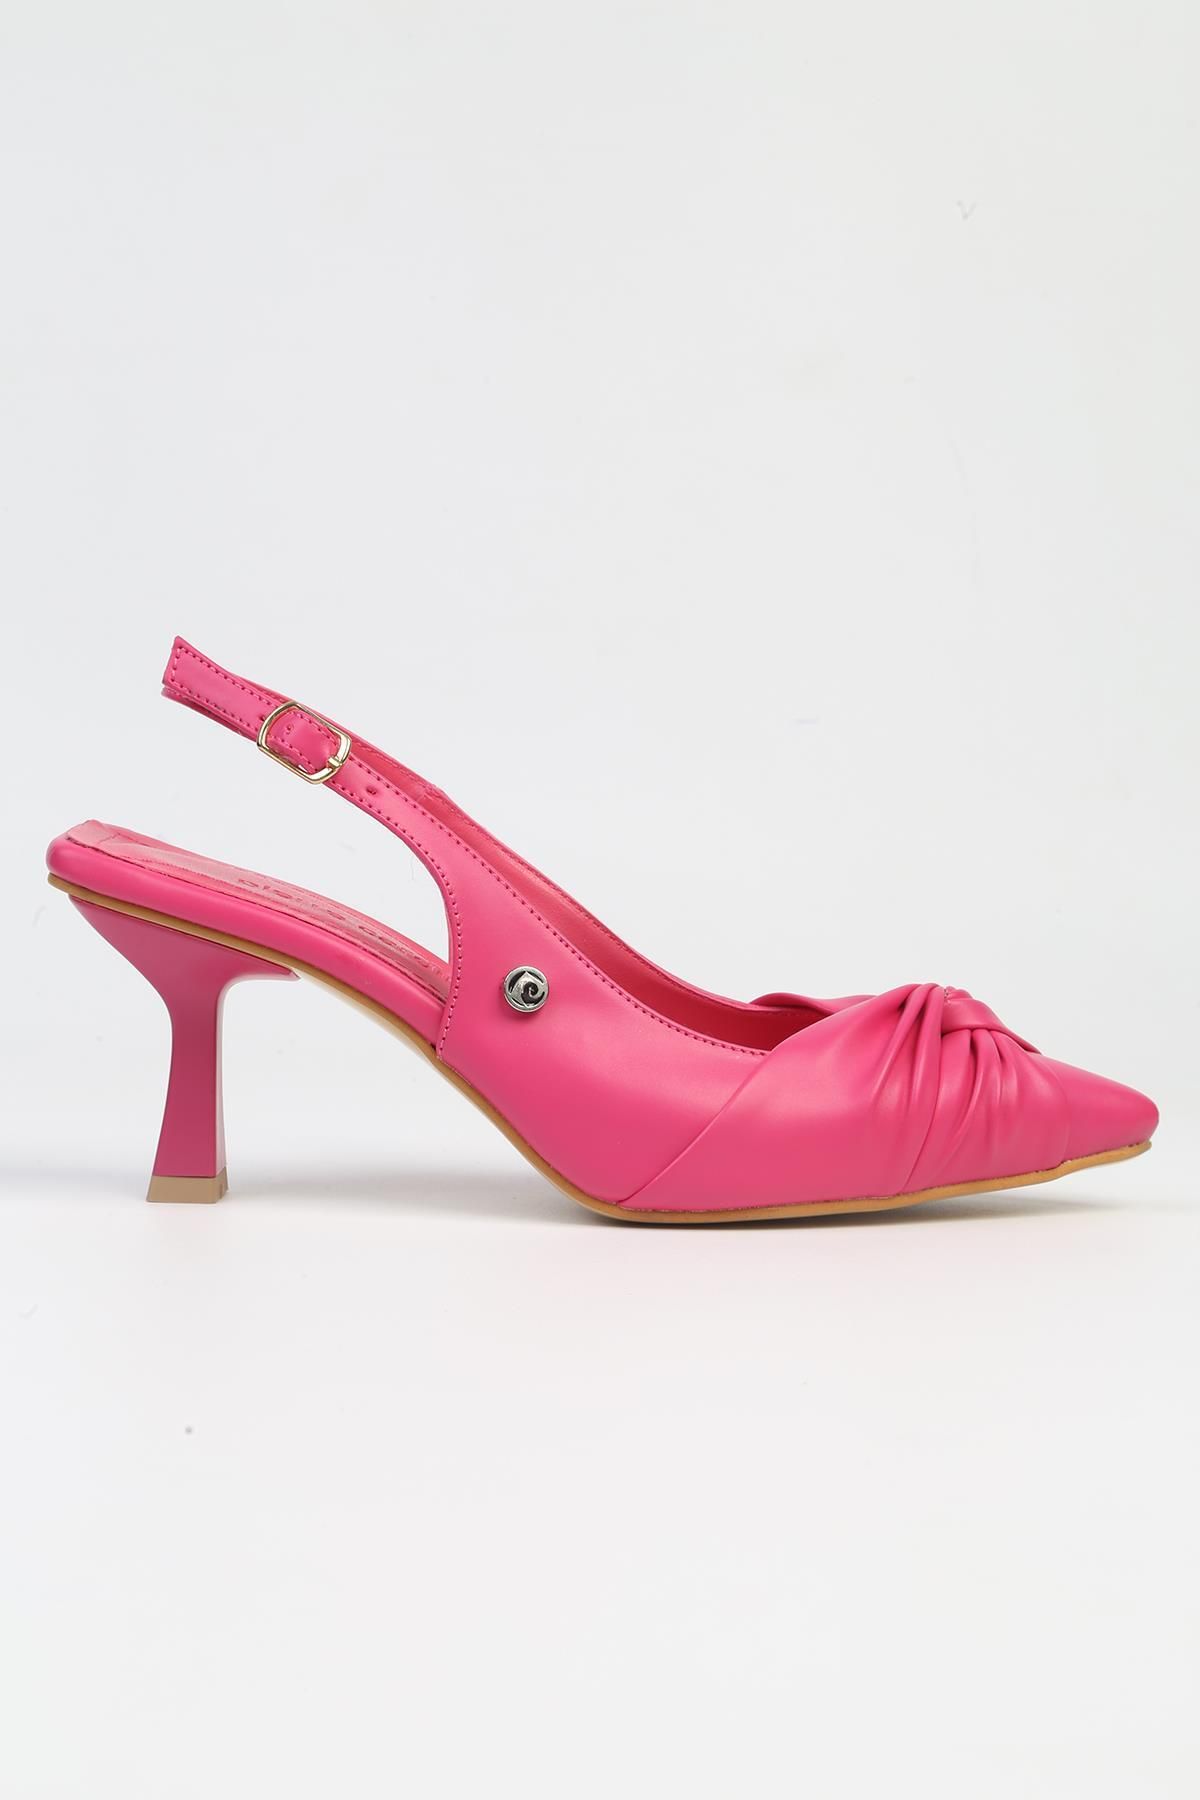 Pierre Cardin ® | PC-53111- 3592 Fusya Cilt-Kadın Topuklu Ayakkabı